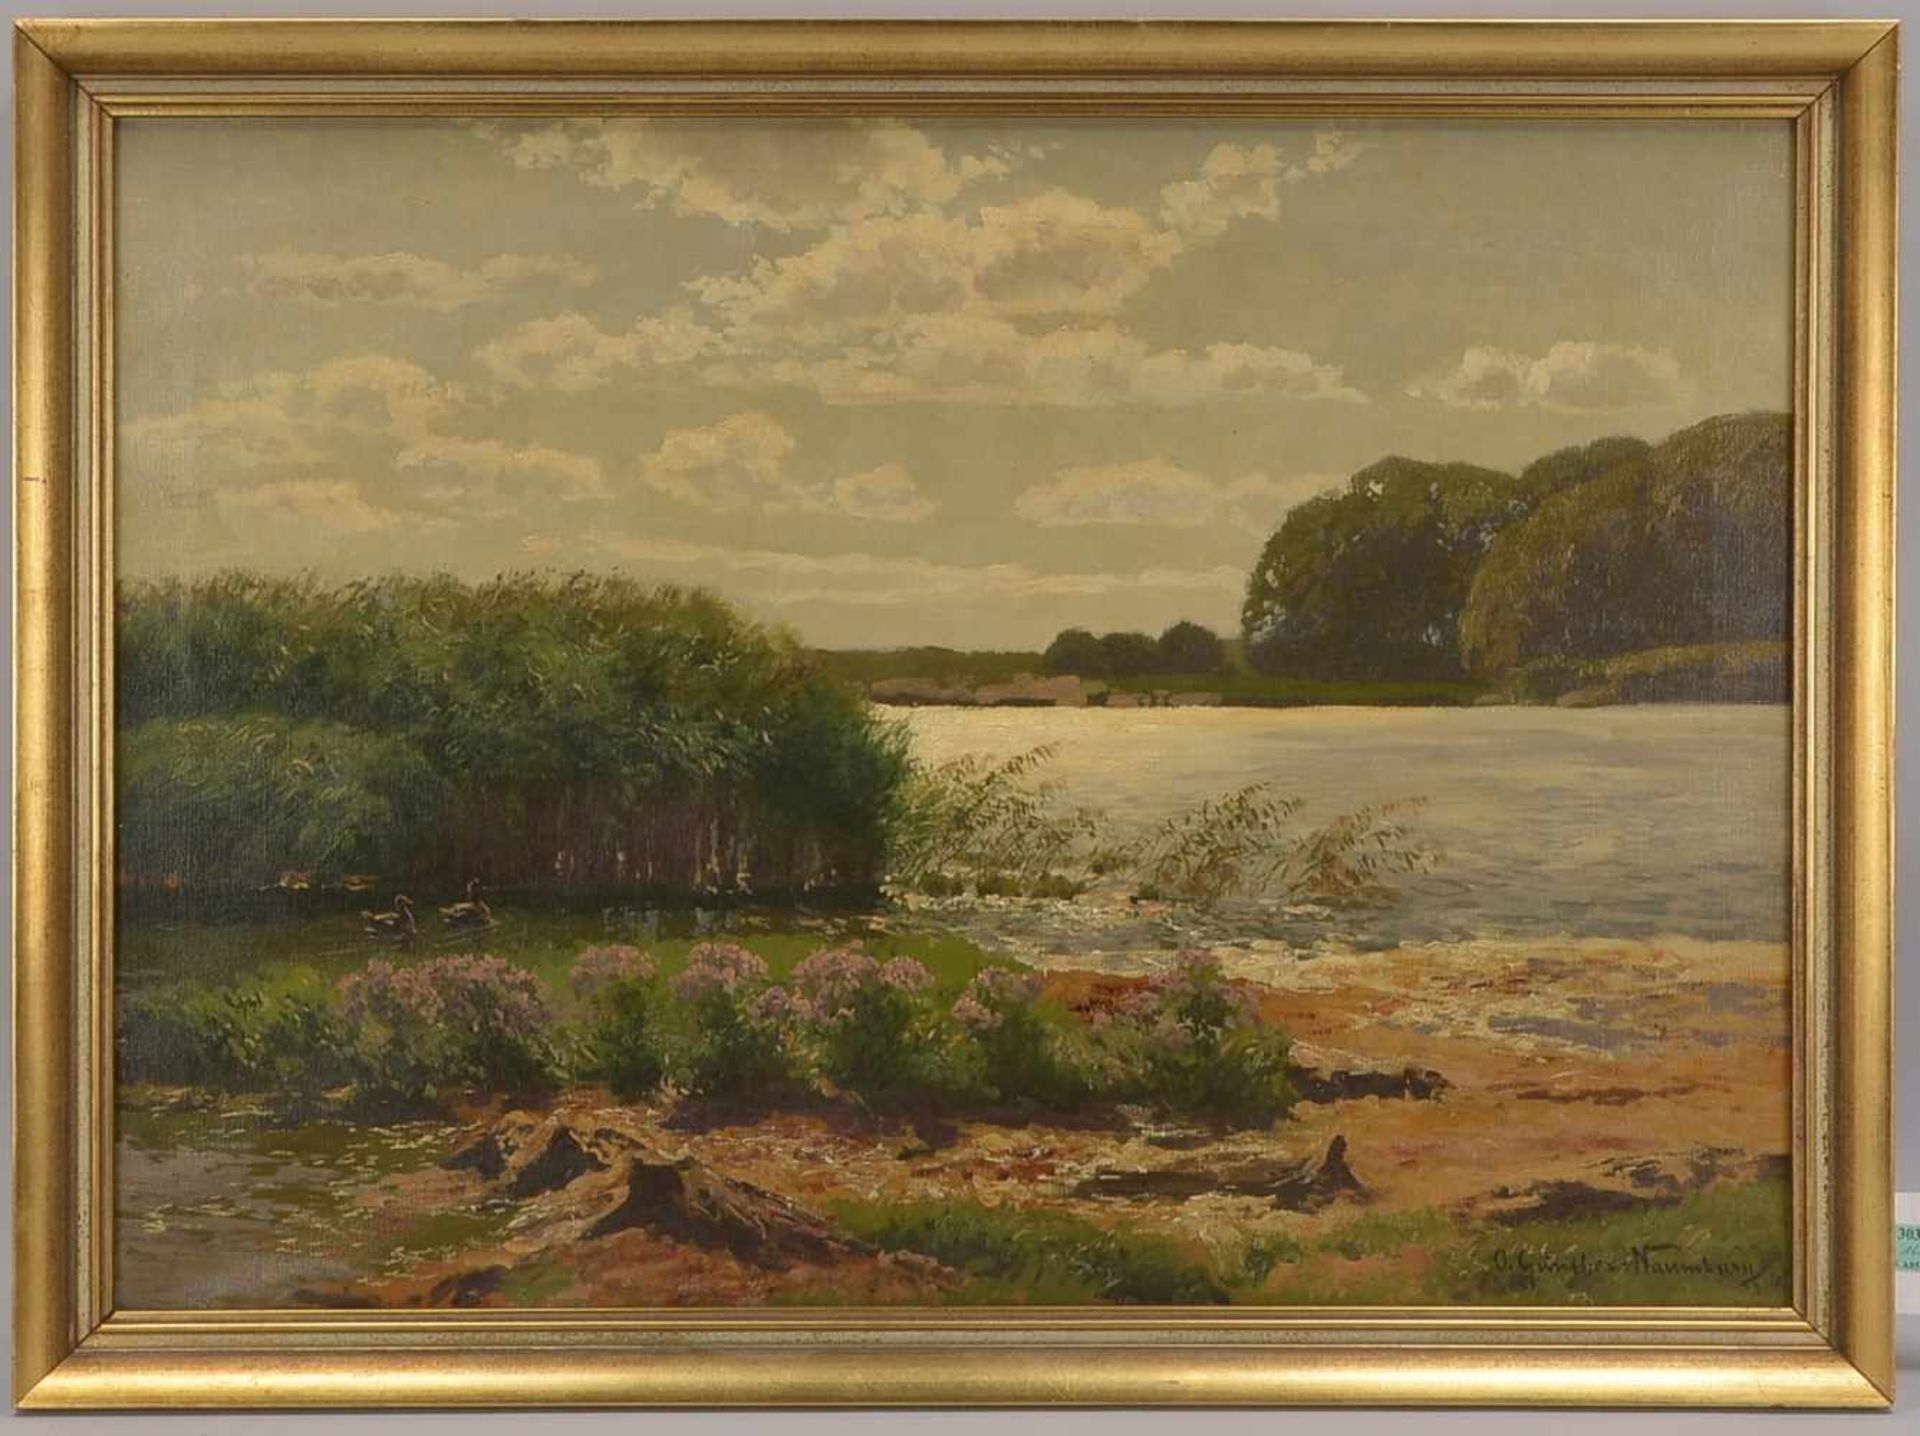 Naumburg, Günther (1856 - 1941), 'Seenlandschaft', Öl/Lw, unten rechts signiert; Bildmaße 54 x 76